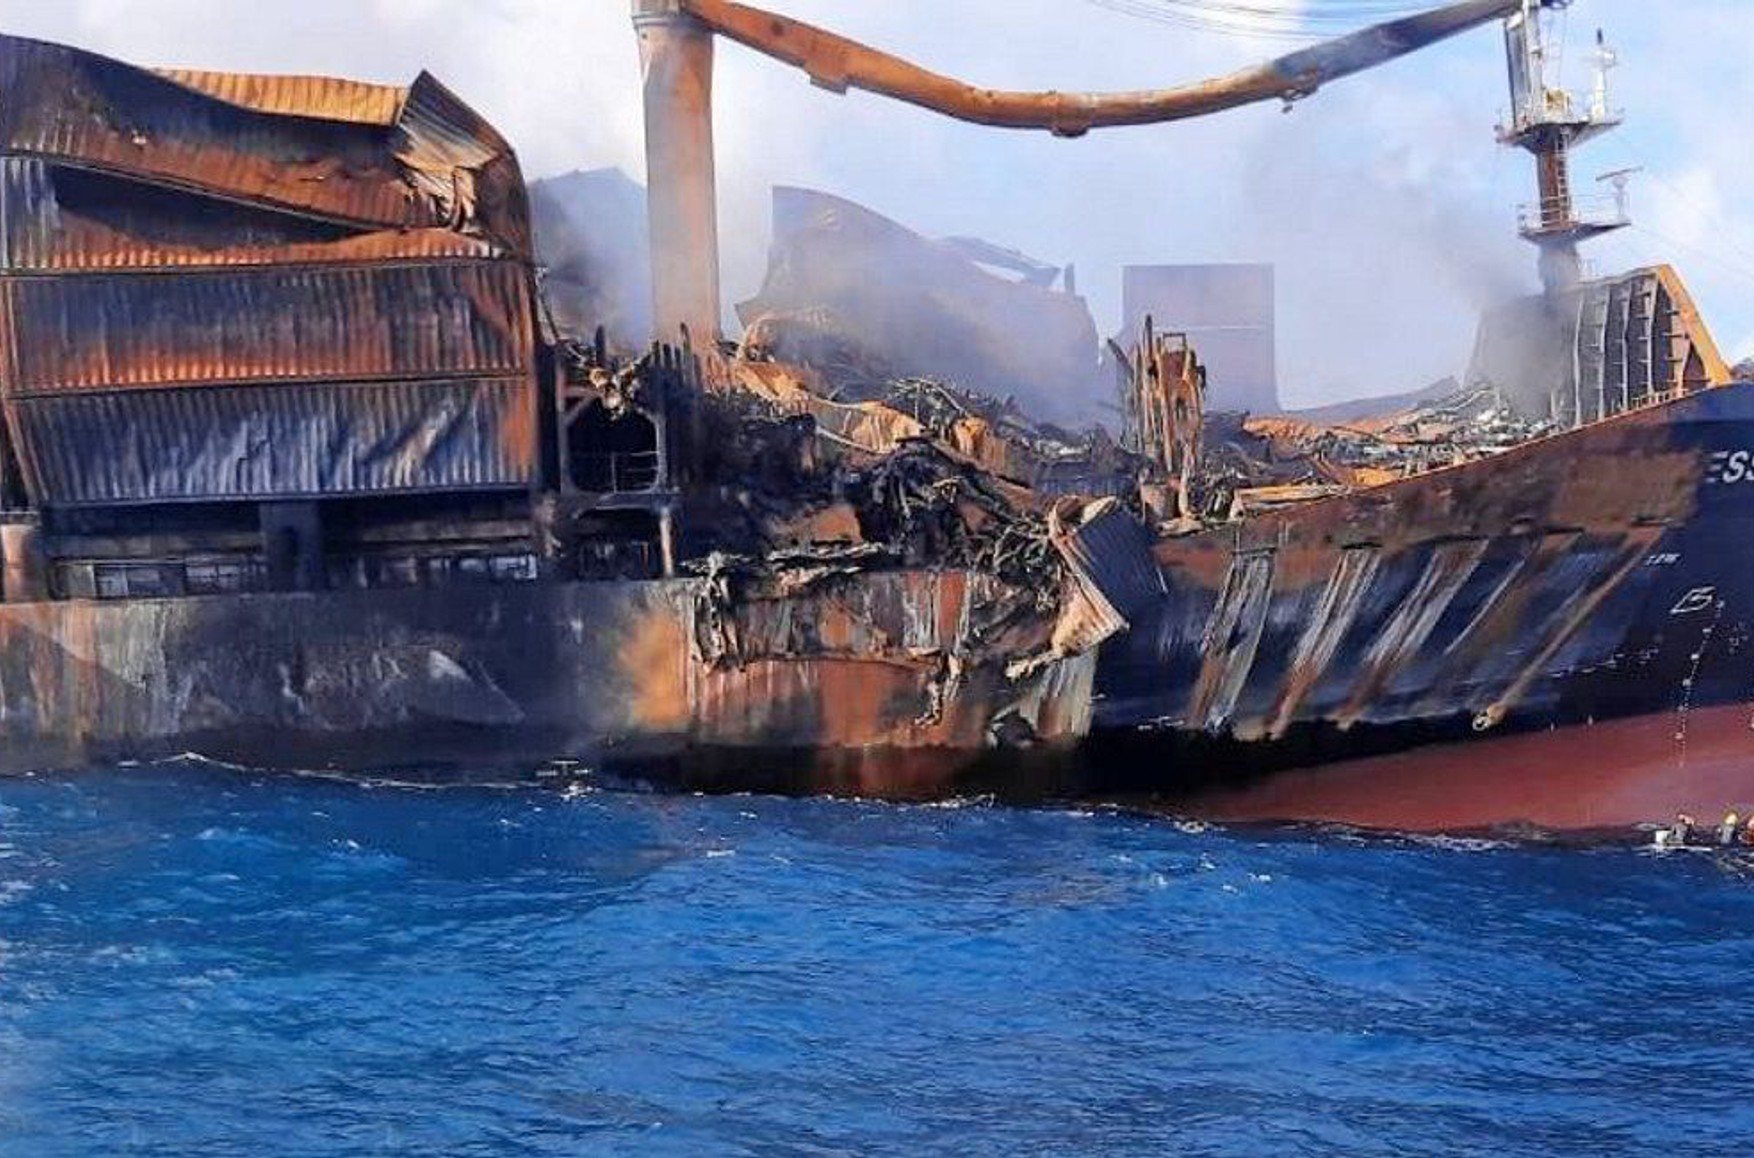 Біля берегів Шрі-Ланки затонуло судно з хімікатами. Це може викликати екологічну катастрофу